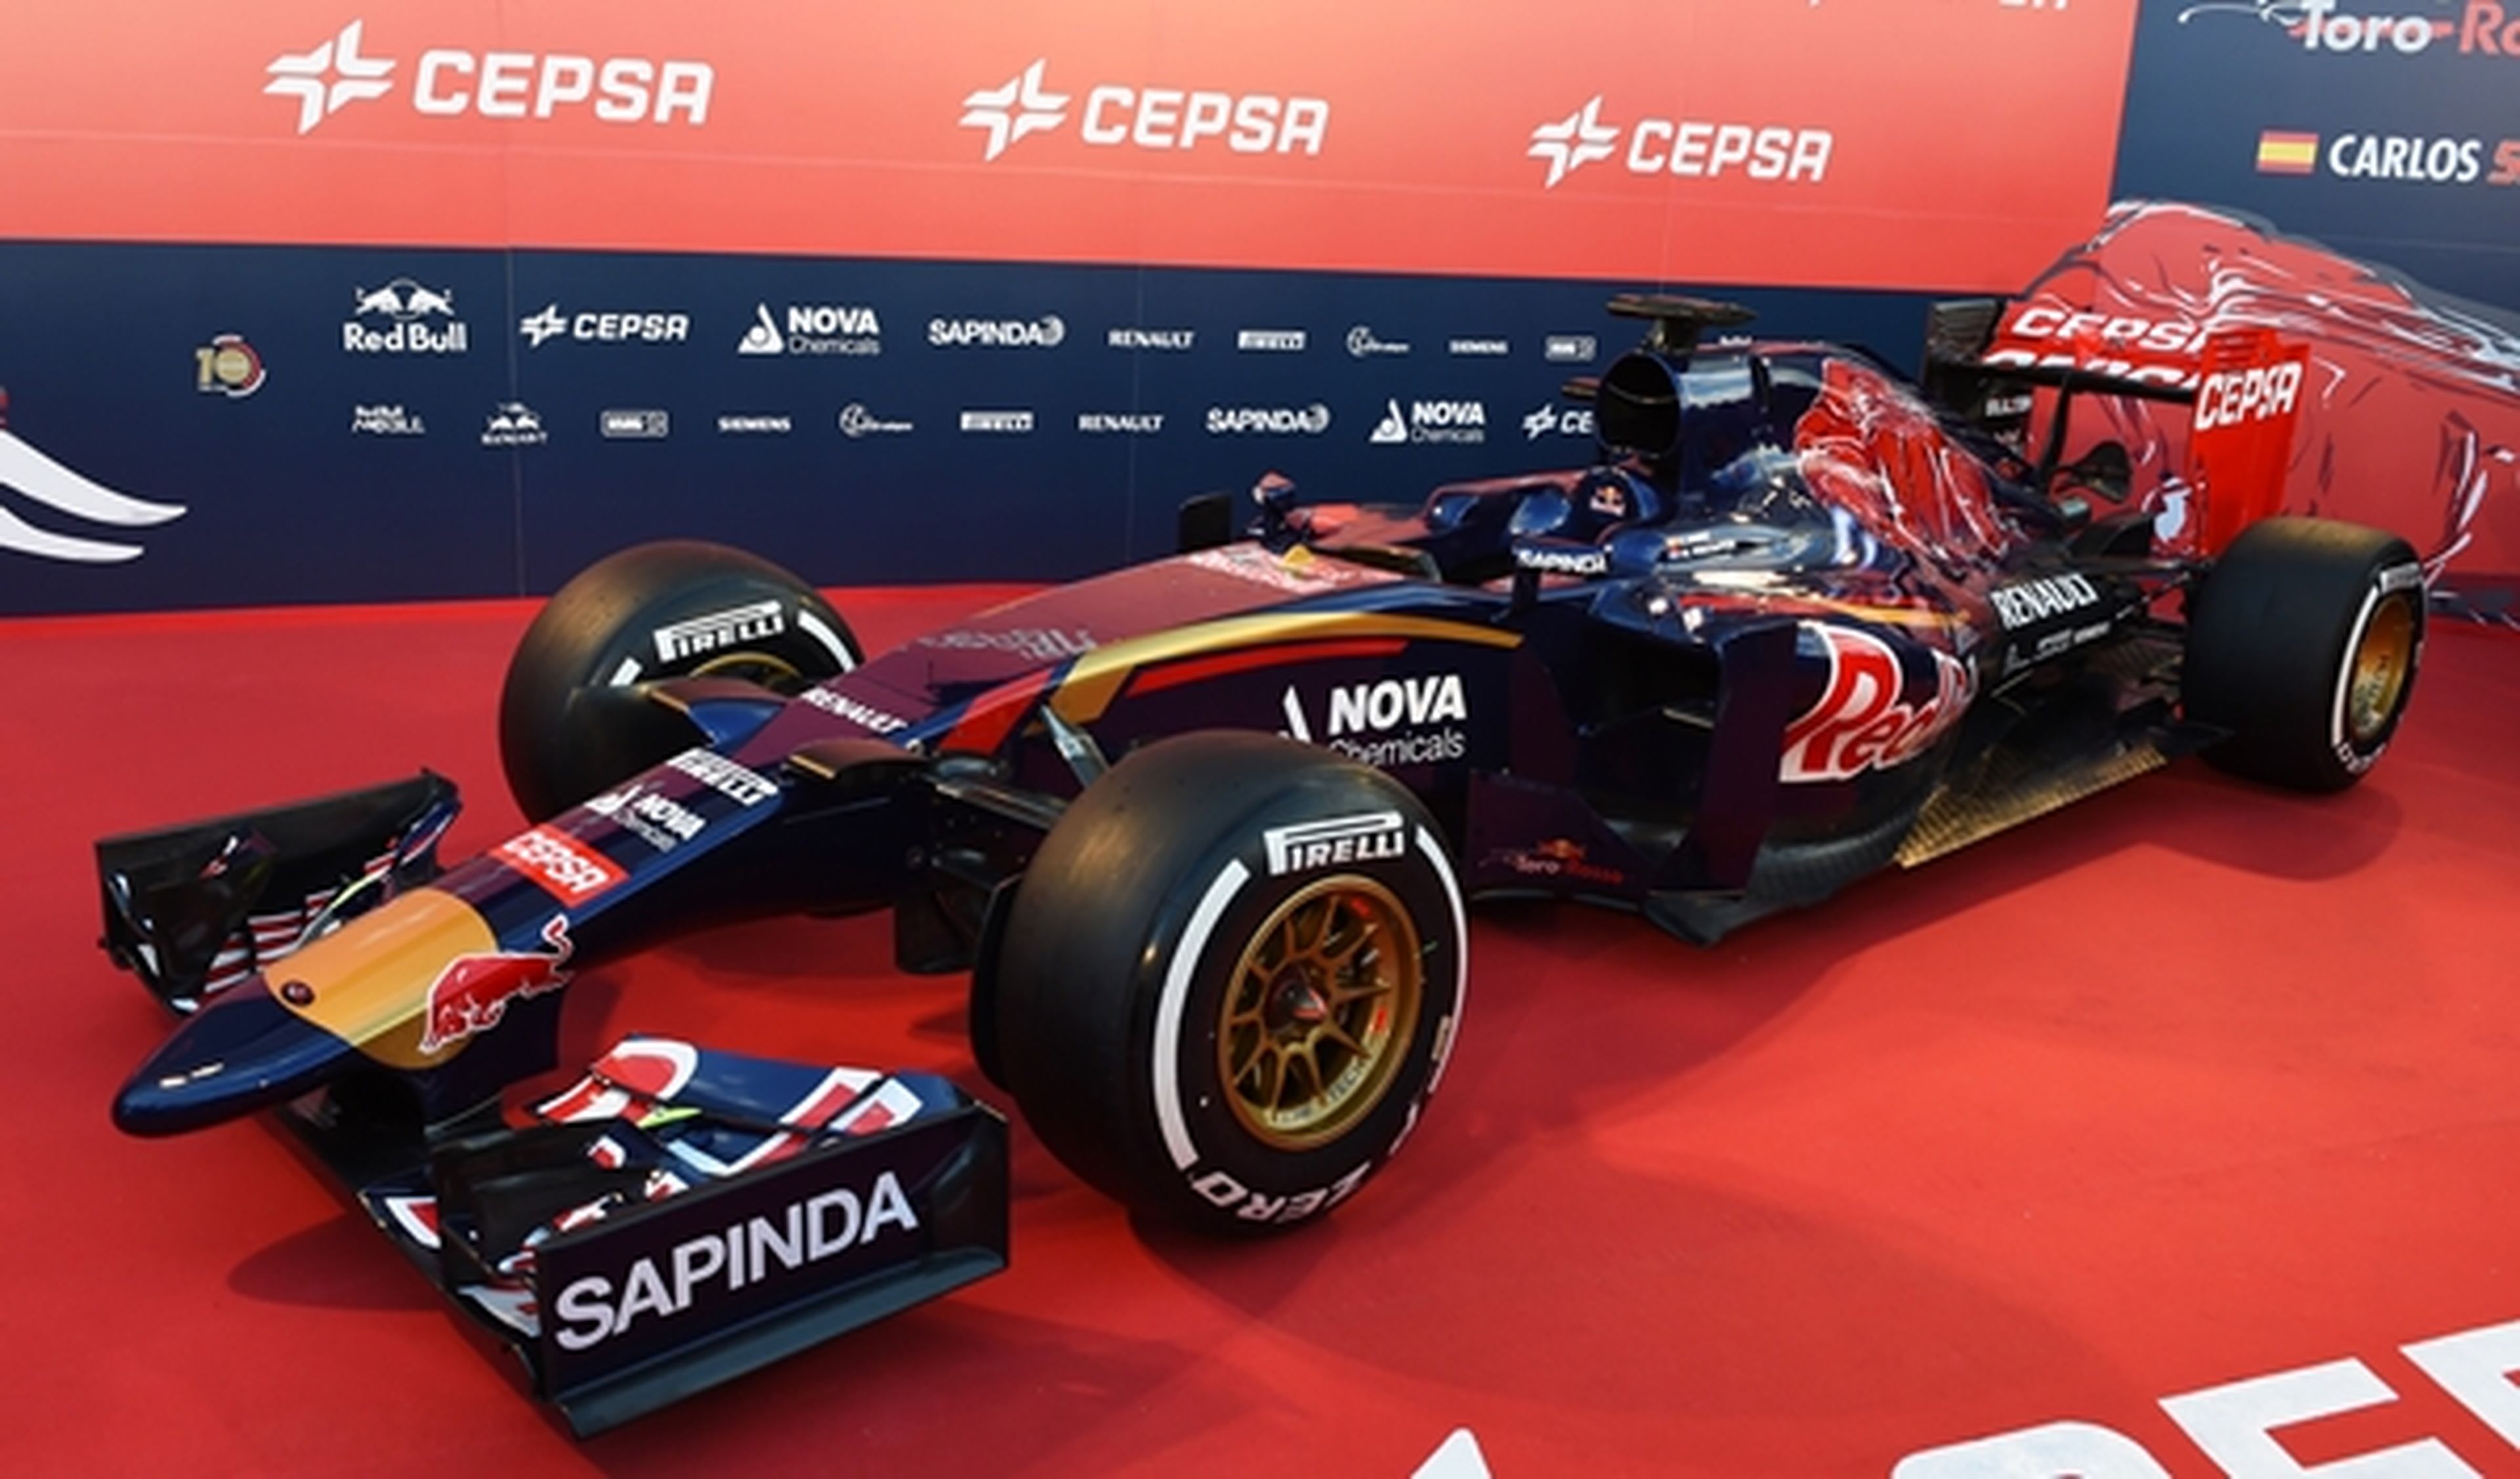 Presentado el nuevo Toro Rosso STR10 en Jerez